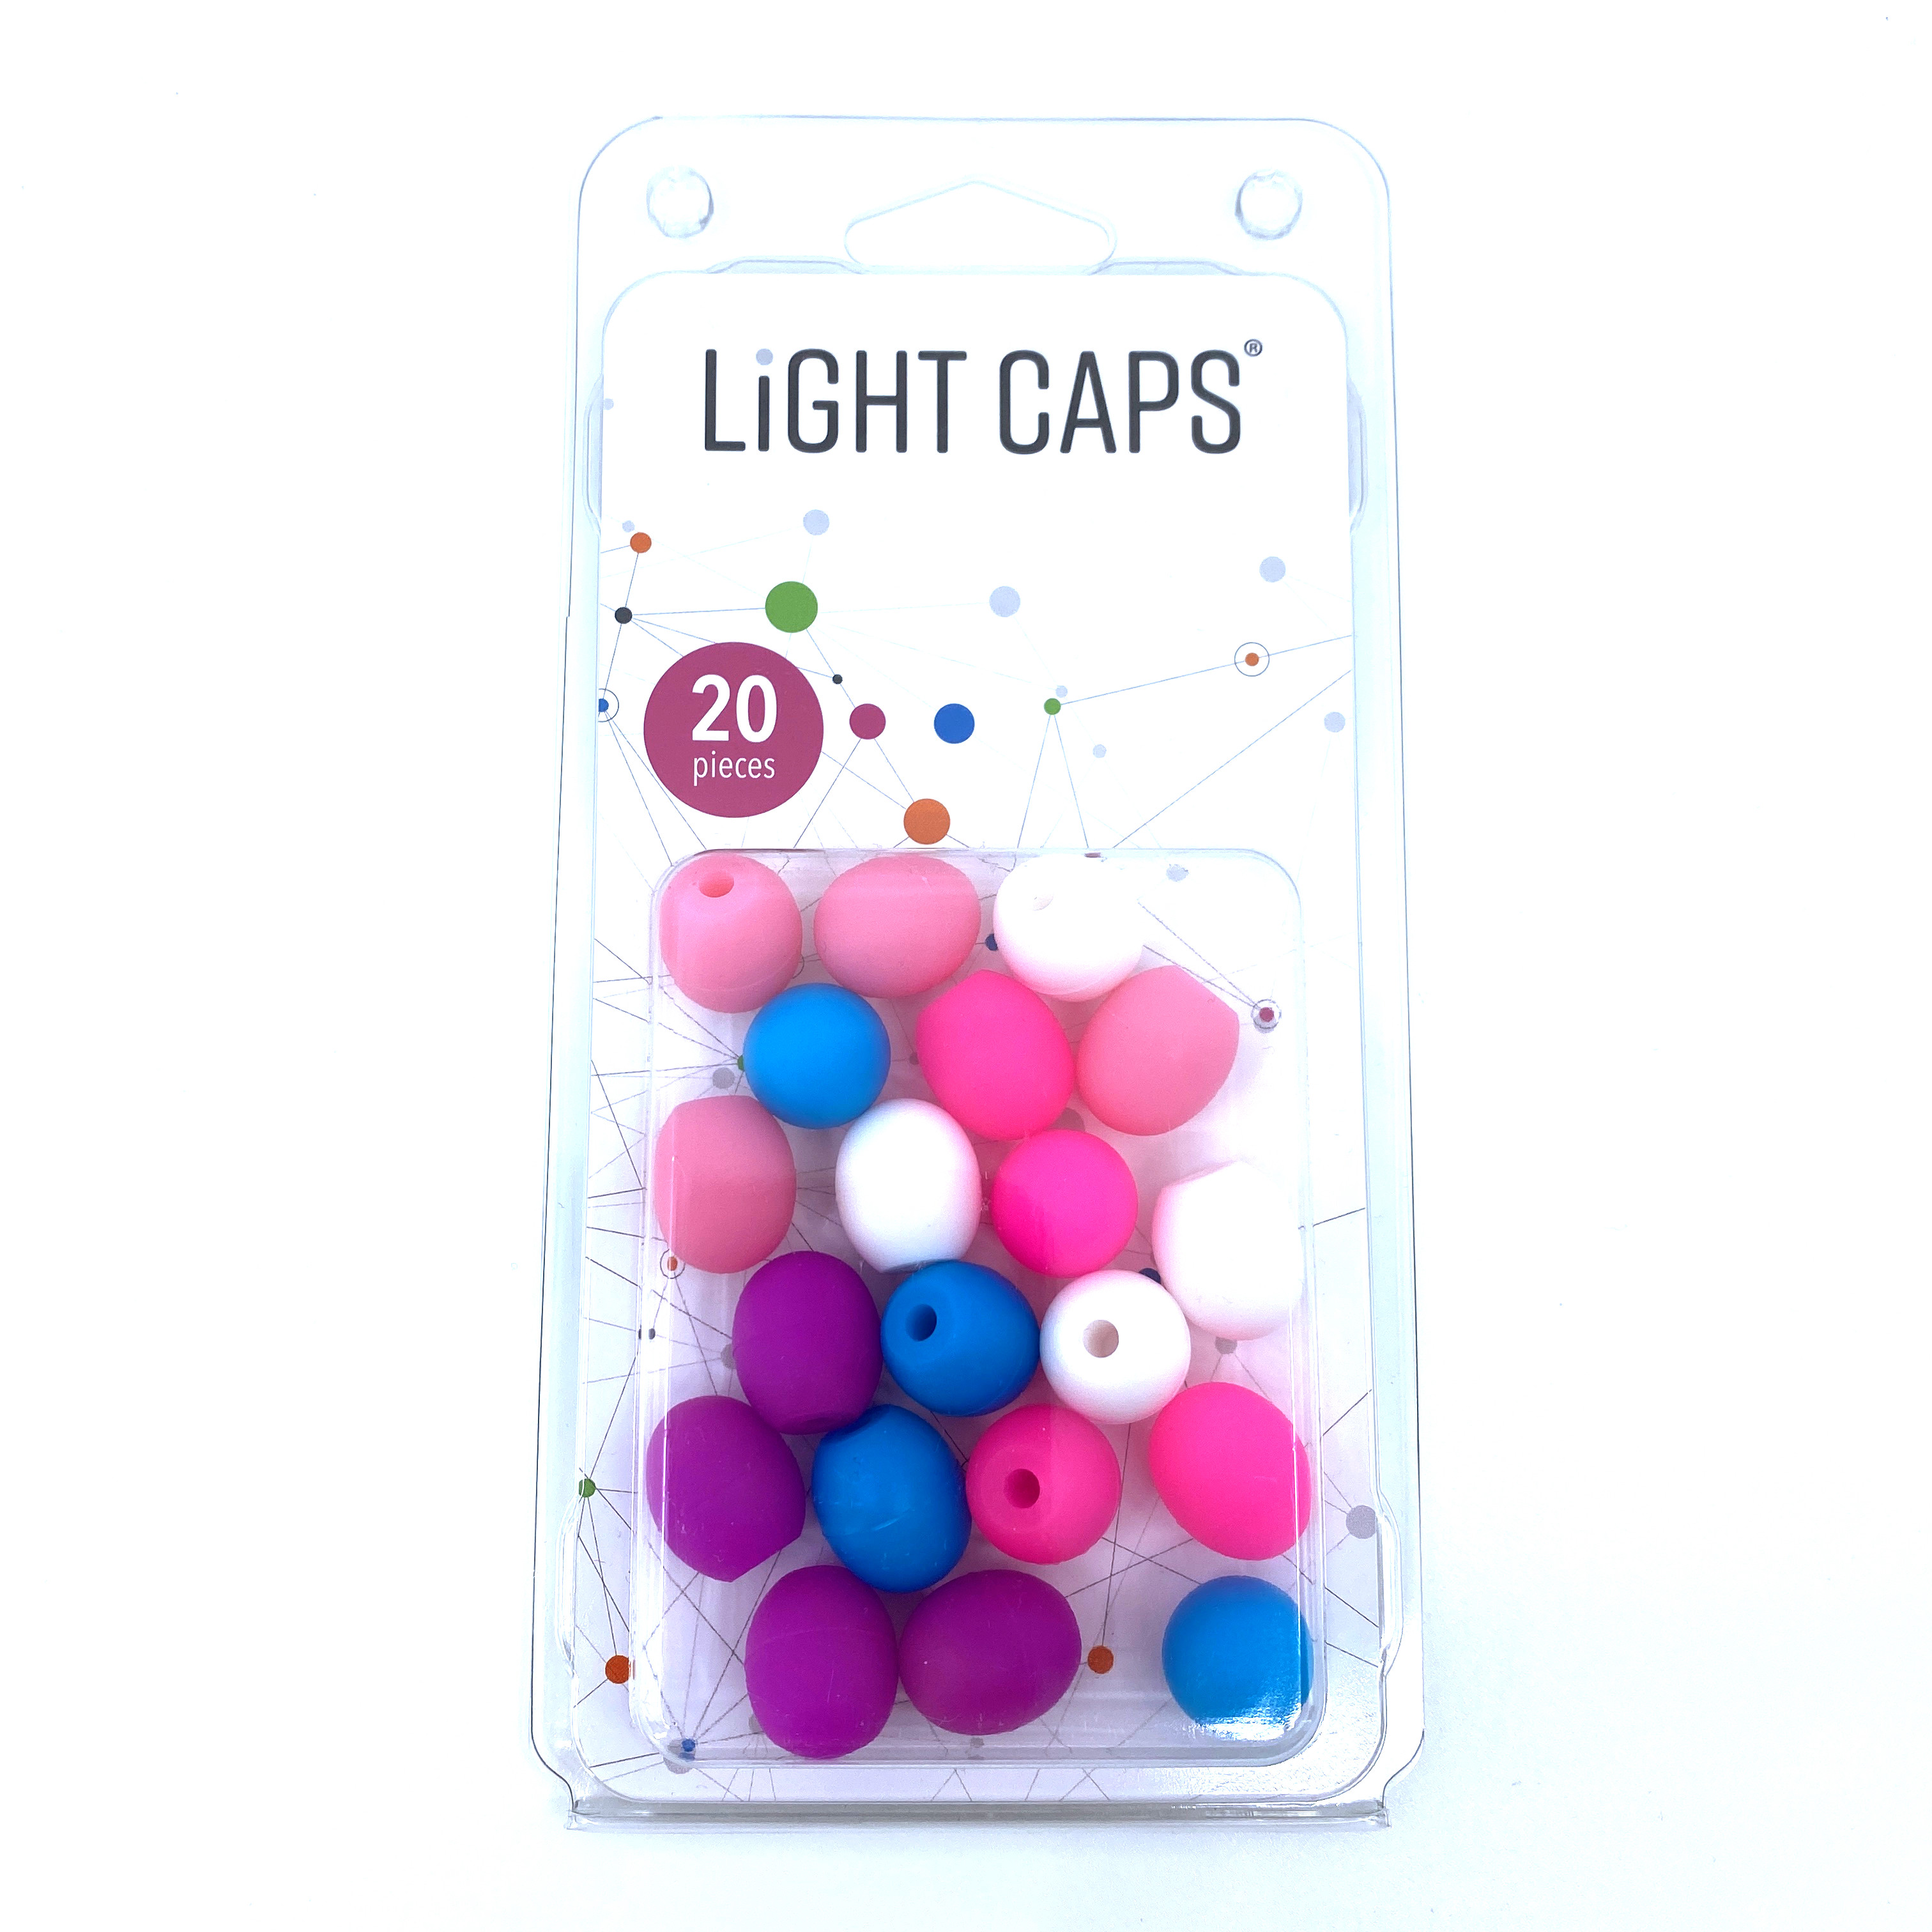 LIGHT CAPS® mix bílá+fialová+modrá+2 odstíny růžové, 20ks v balení